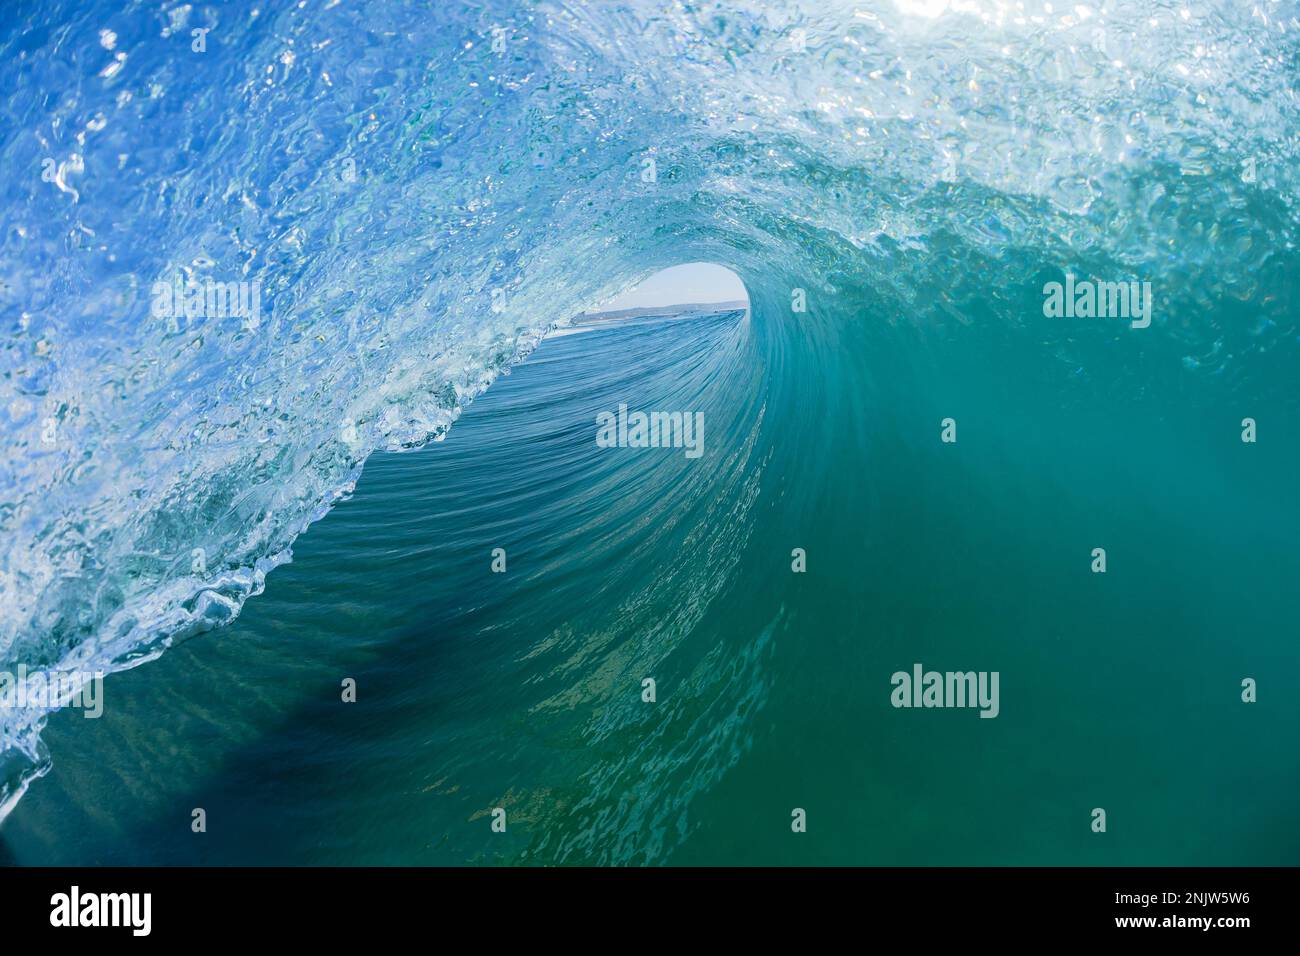 Wellenschwimmen im hohlen, blauen Wasser, Surfer beim Surfen, Nahaufnahmen des Wassers. Stockfoto